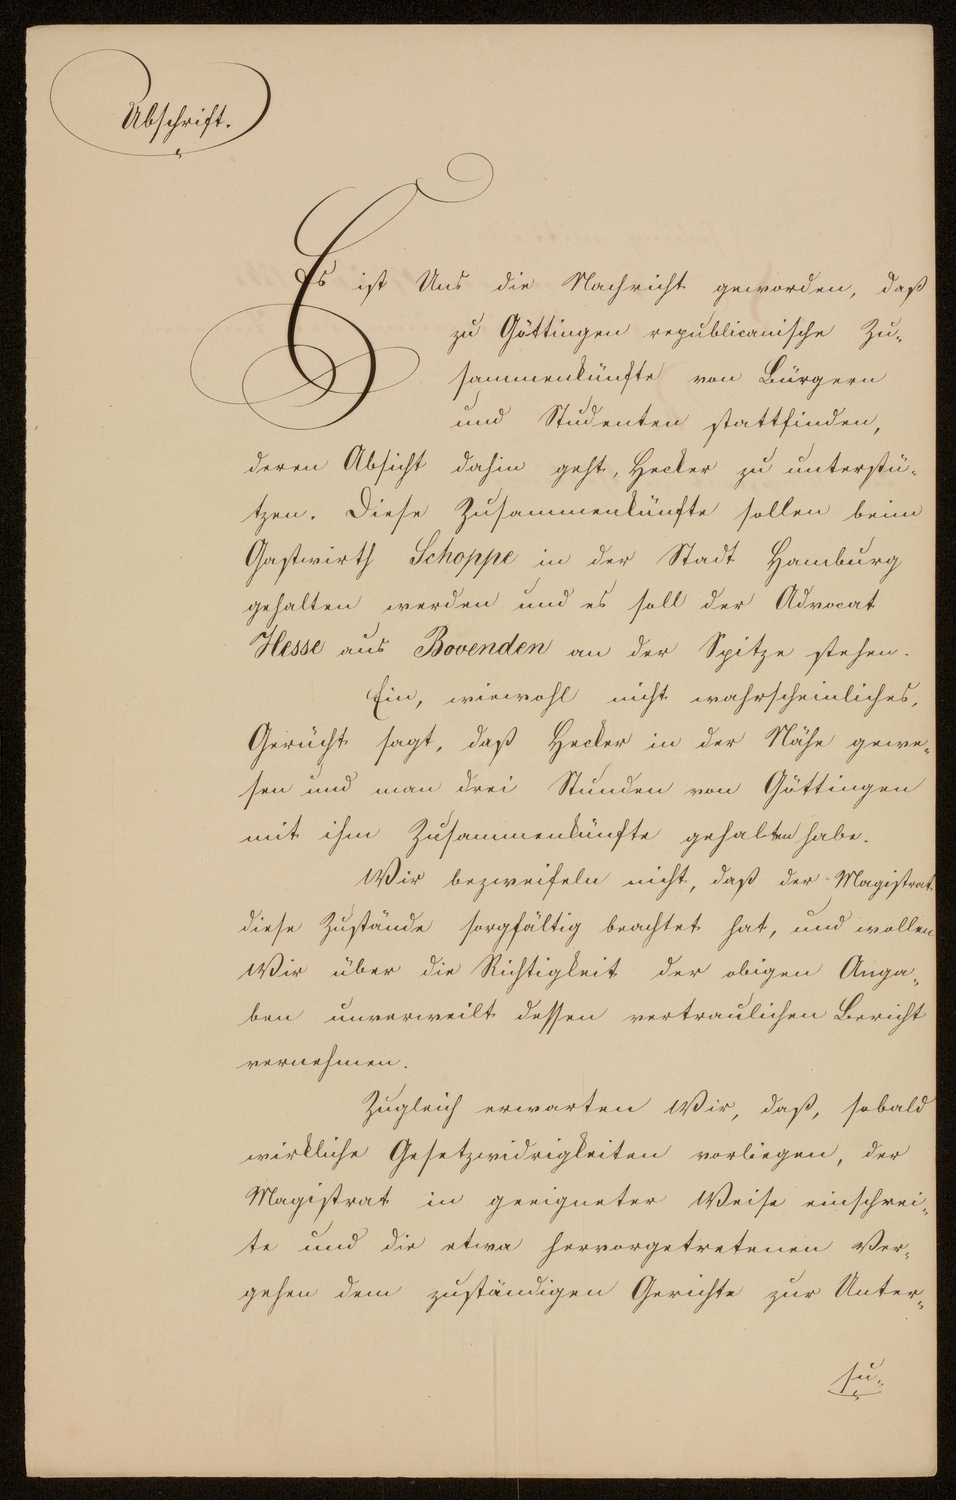 Das Ministerium fordert Aufklärung über republikanische Umtriebe in Göttingen, Erlass vom 27. Juni 1848